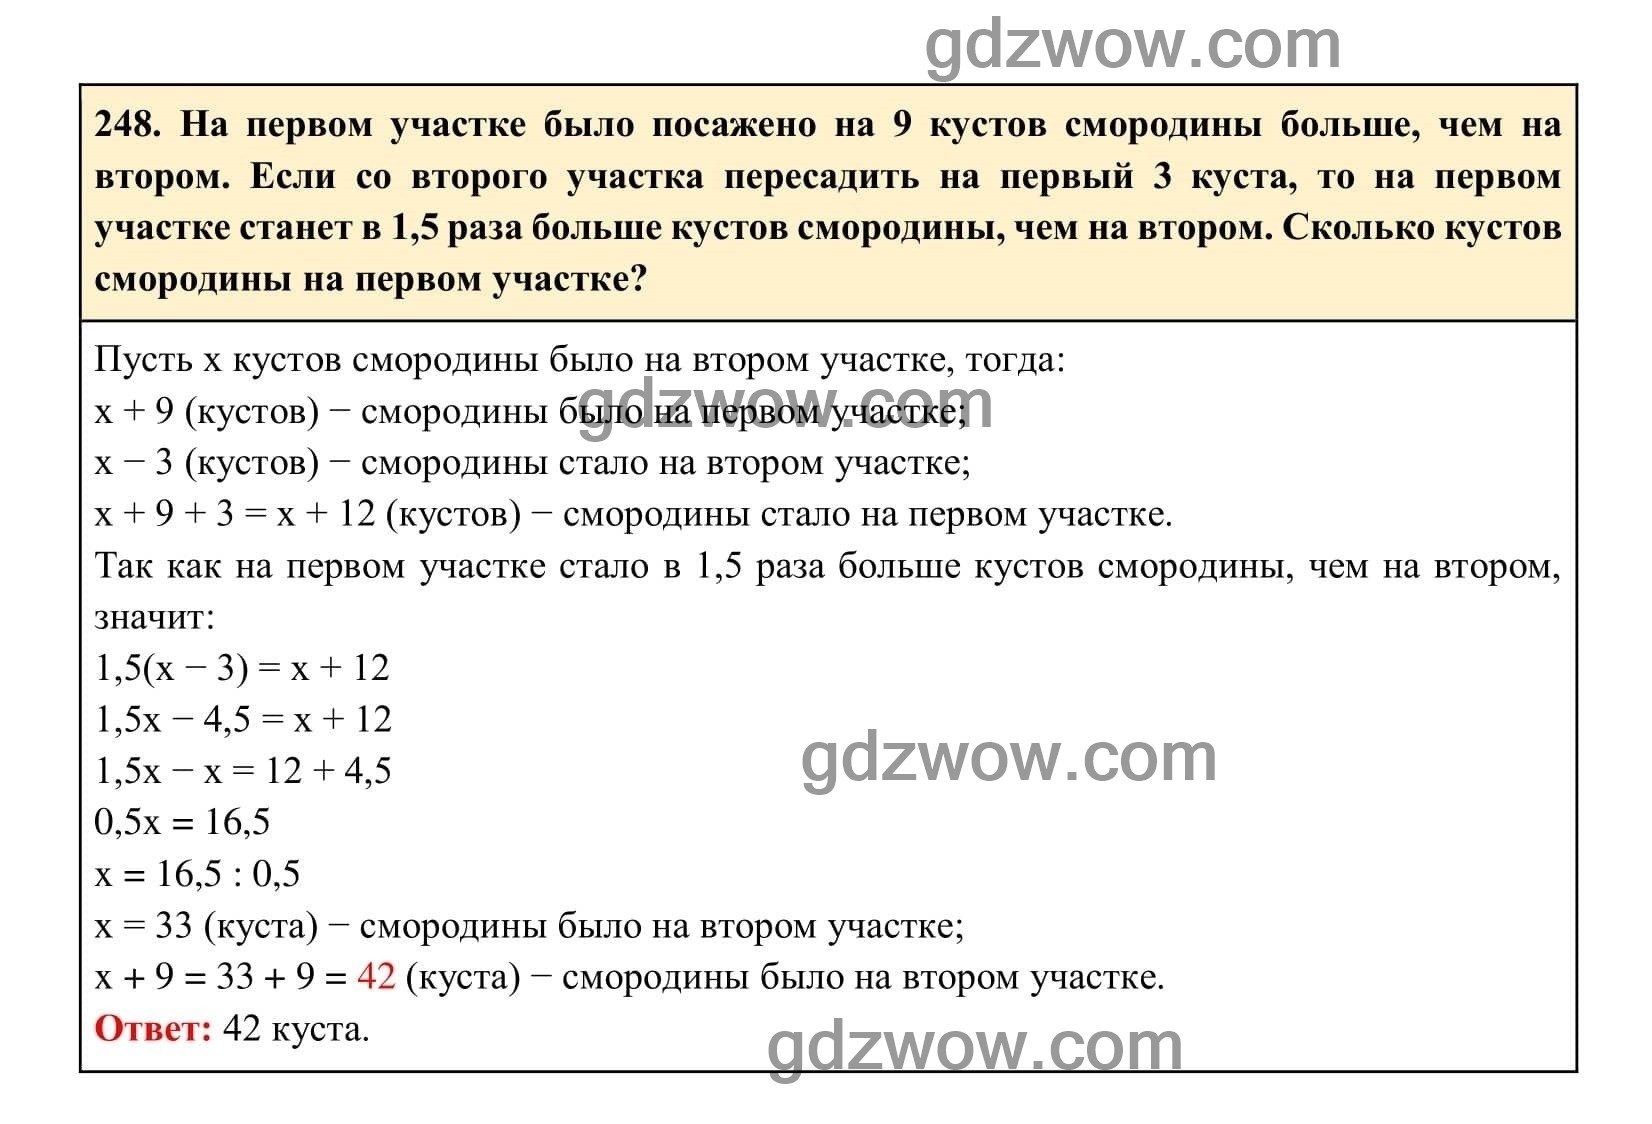 Упражнение 248 - ГДЗ по Алгебре 7 класс Учебник Макарычев (решебник) - GDZwow